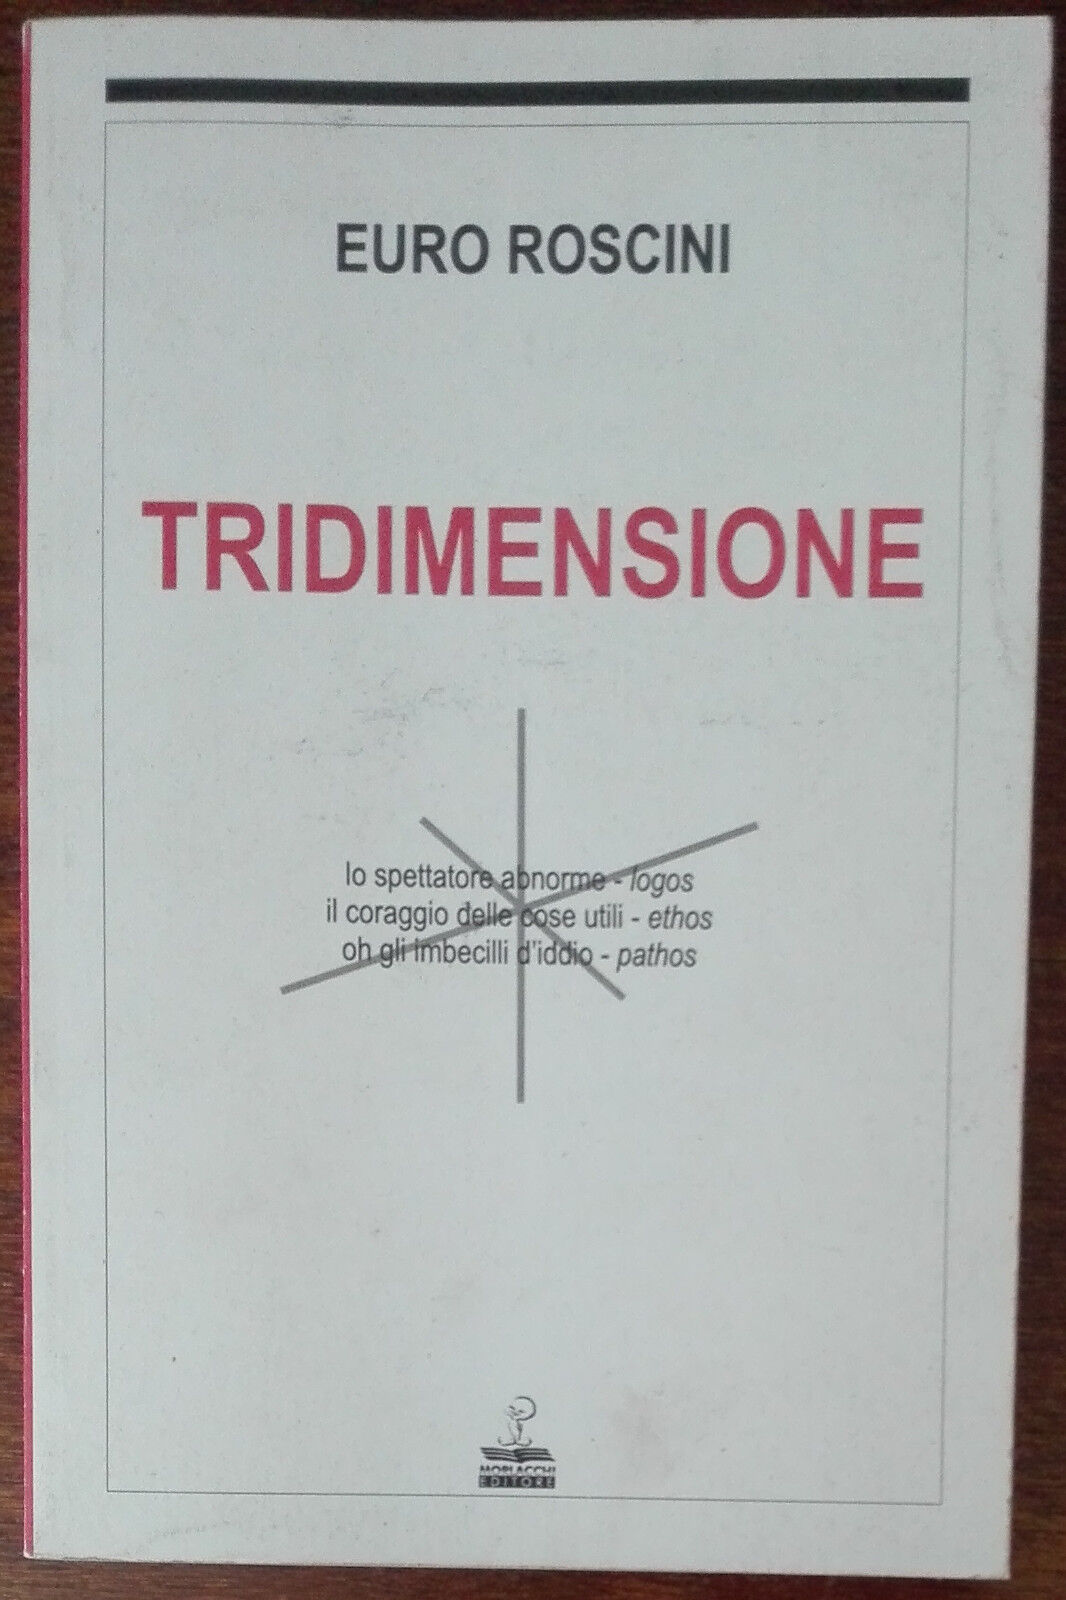 Tridimensione - Euro Roscini - Morlacchi,2000 - A